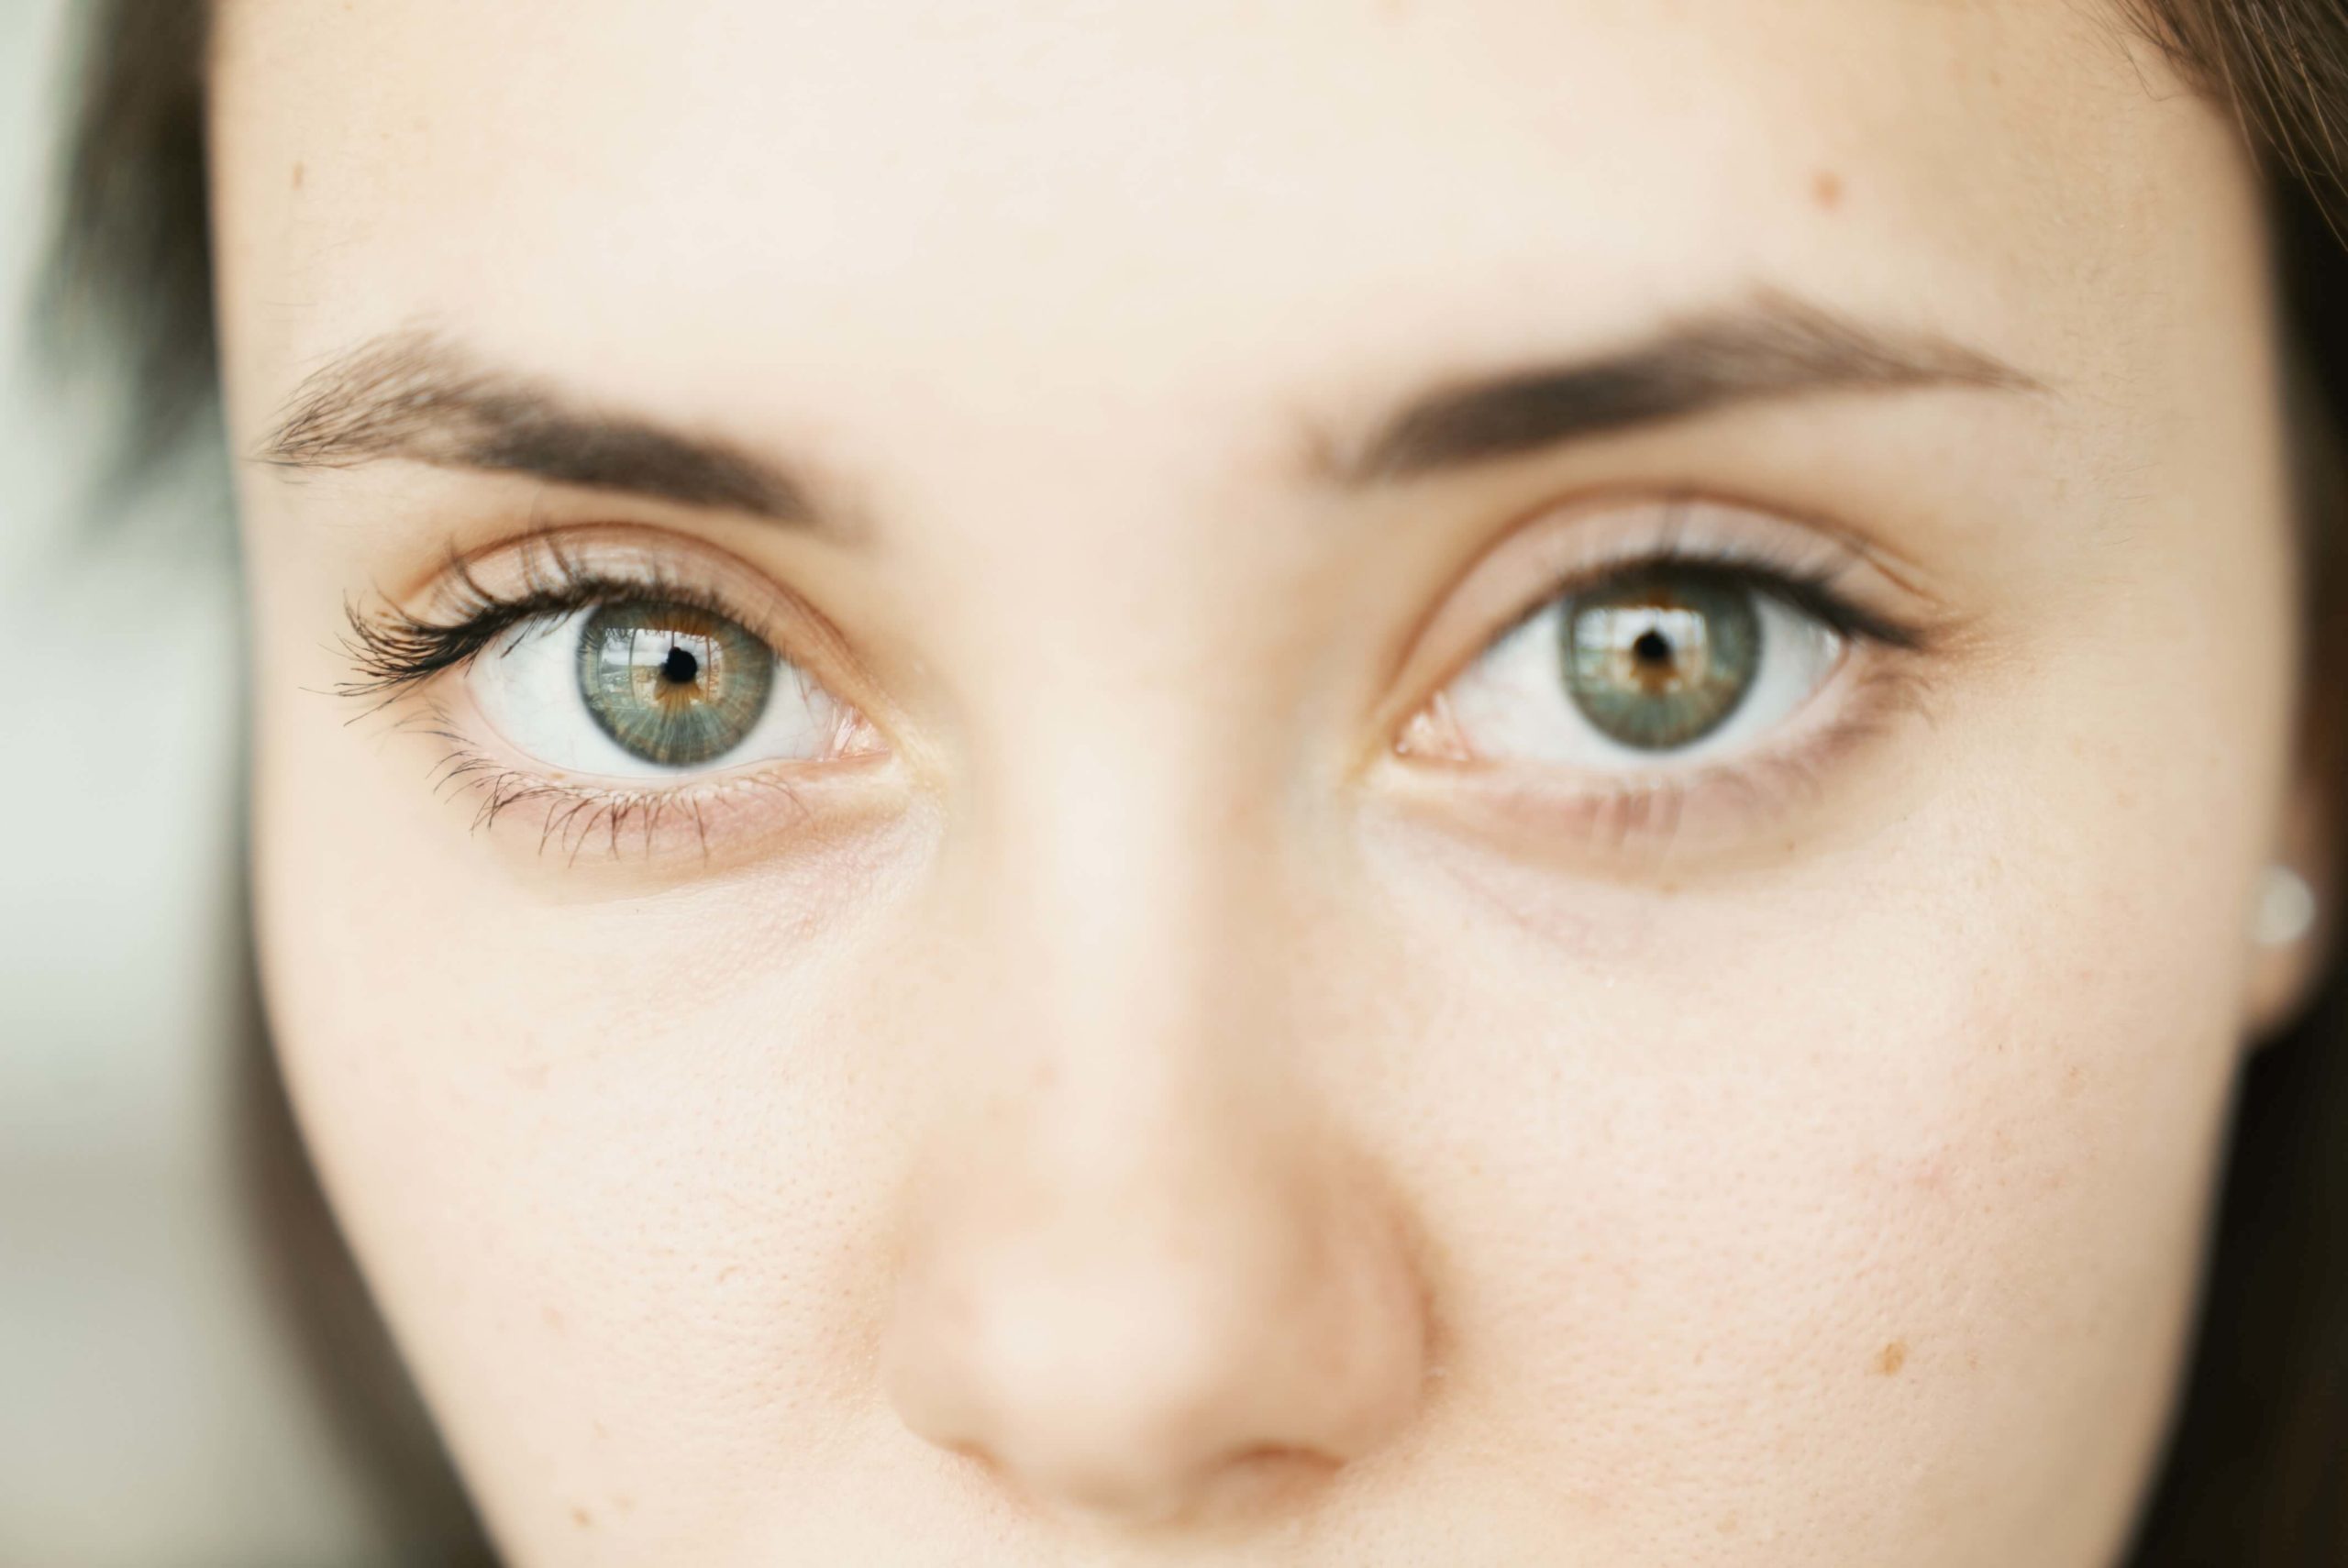 A Woman's eyes